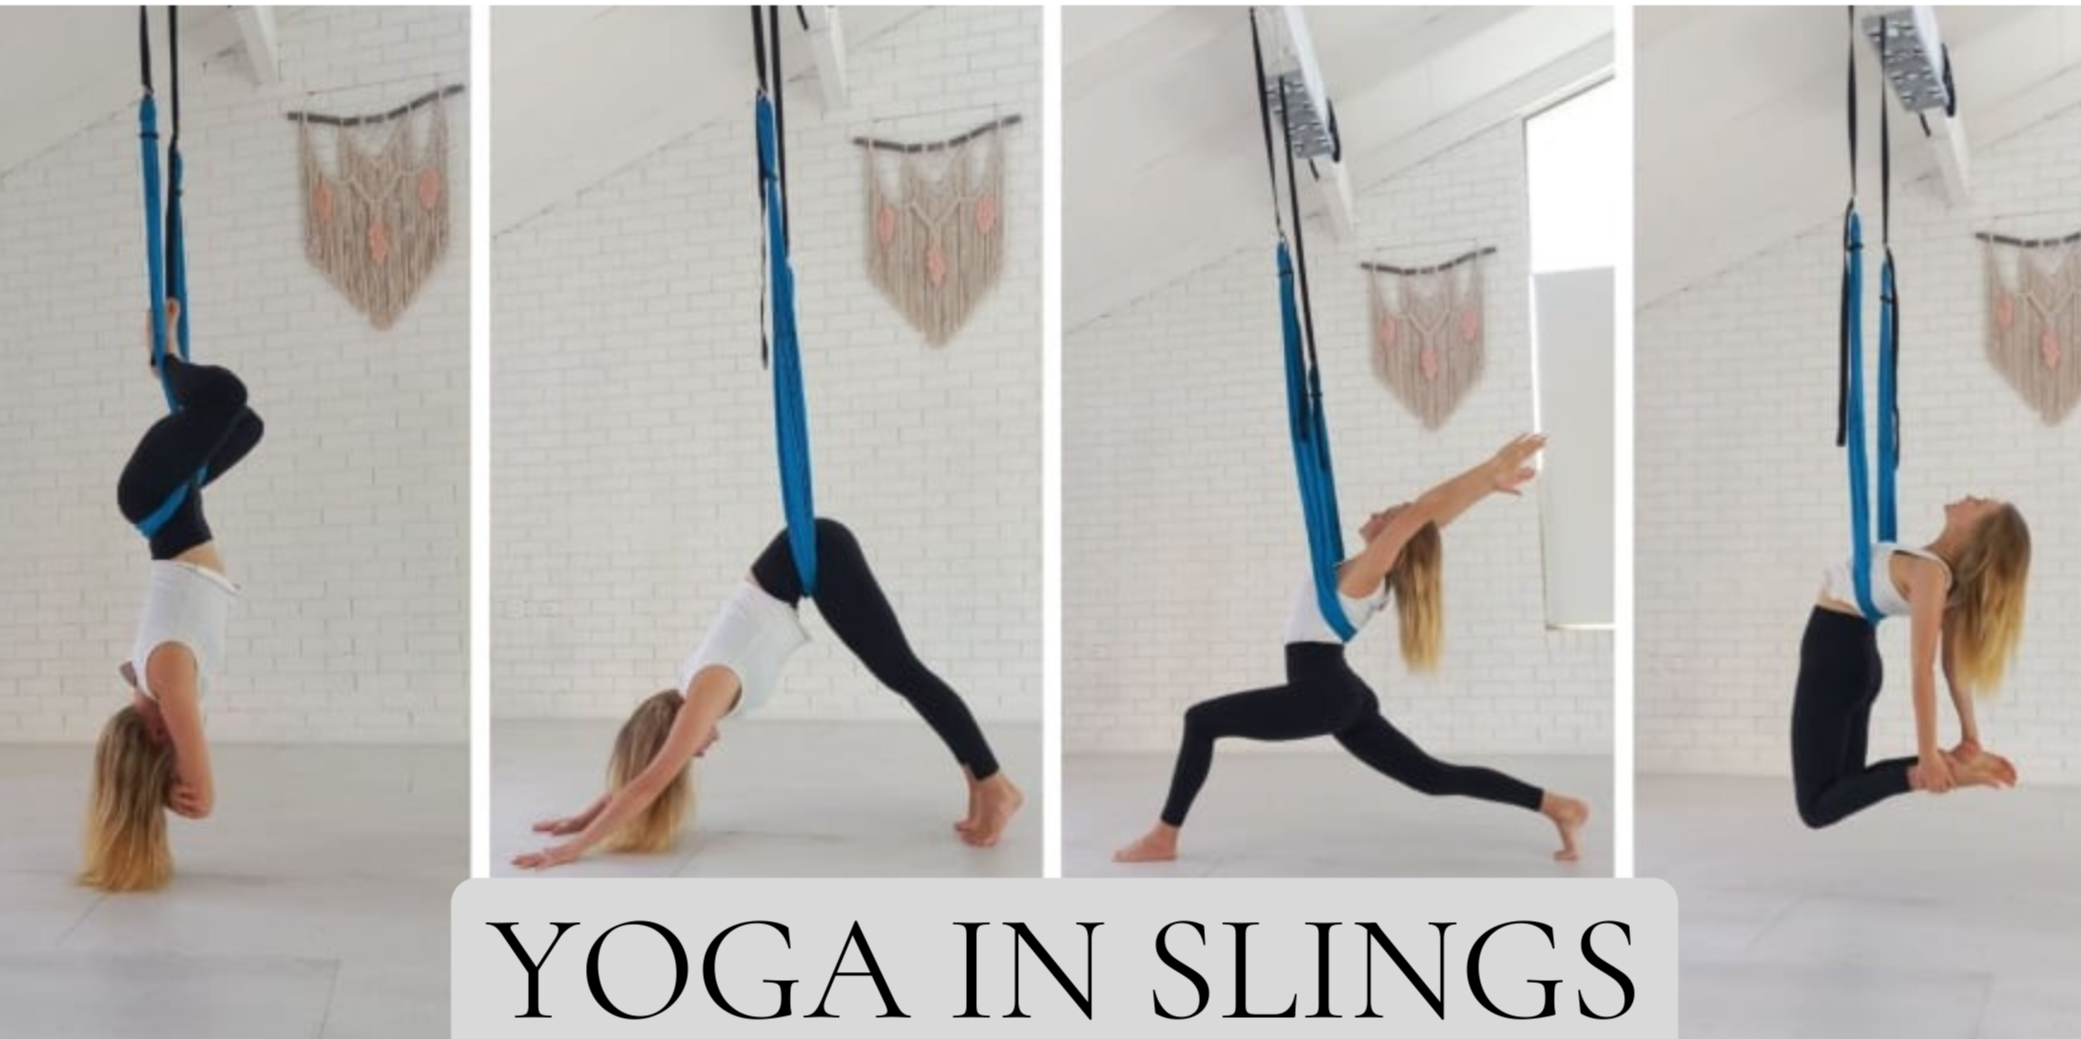 Iyengar Yoga--Backbending with Ropes-Intermediate Iyengar Yoga - YouTube